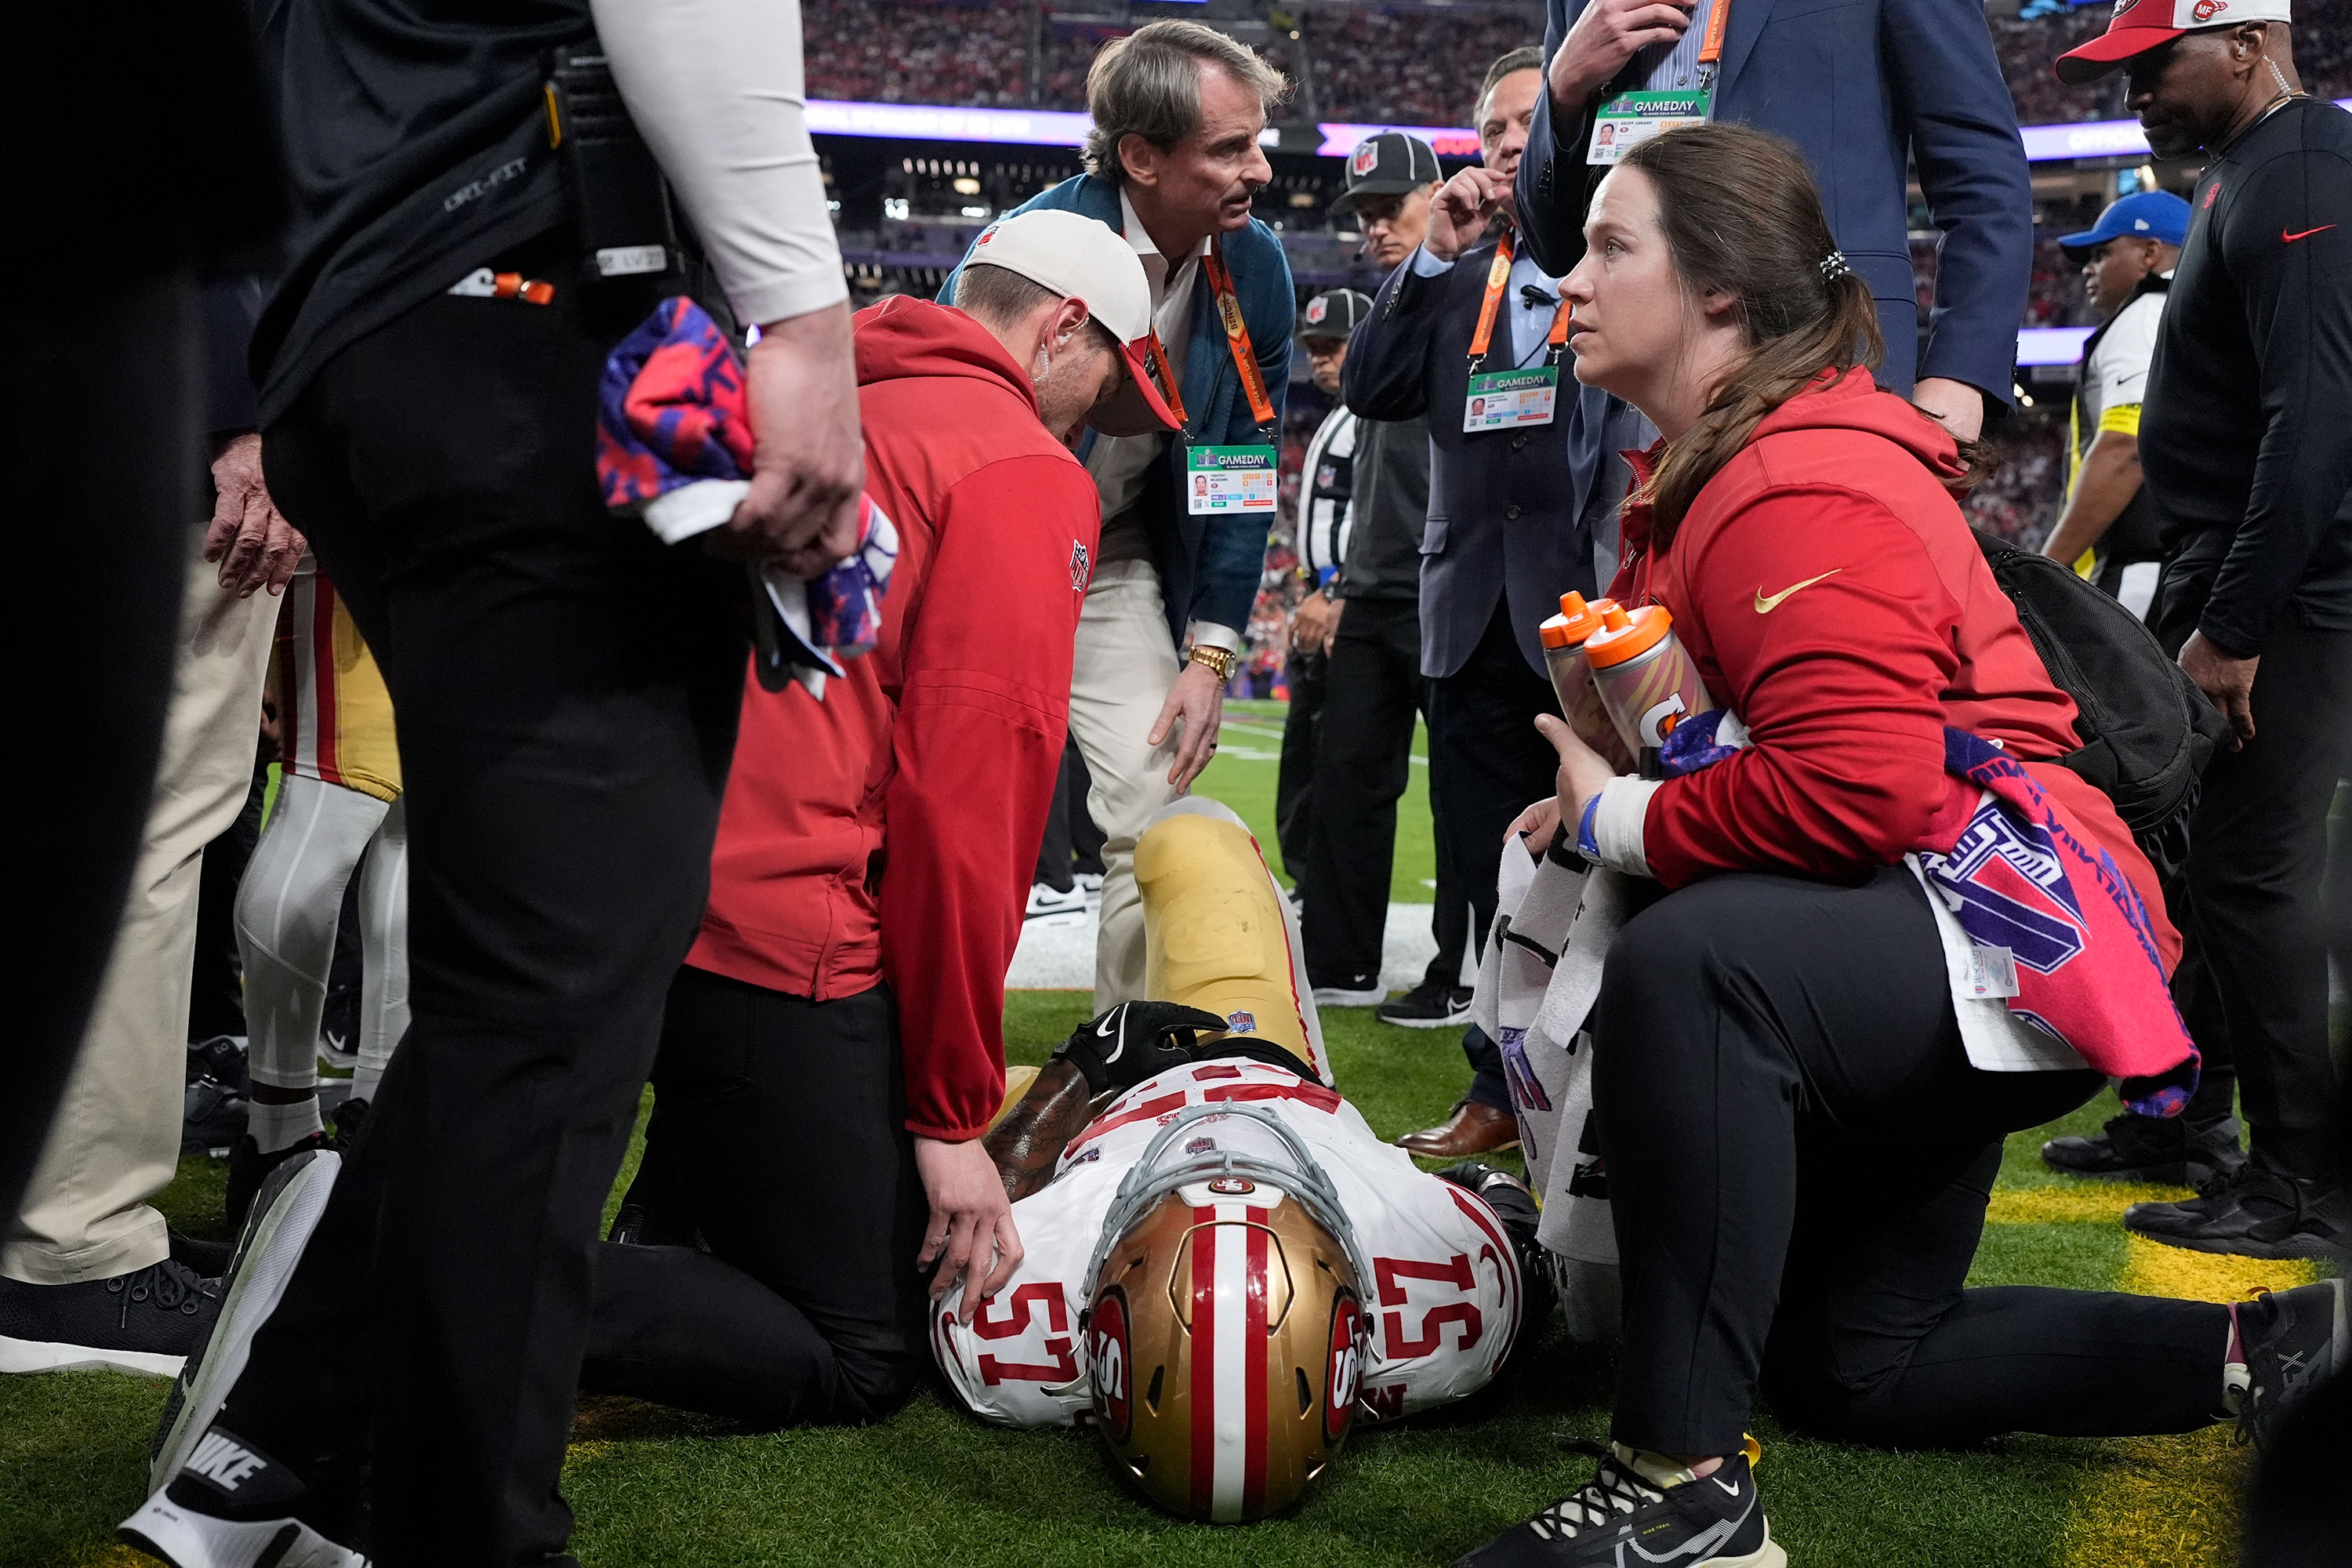 El linebacker de los San Francisco 49ers, Dre Greenlaw, recibe ayuda después de una lesión. (Crédito: George Walker IV/AP)